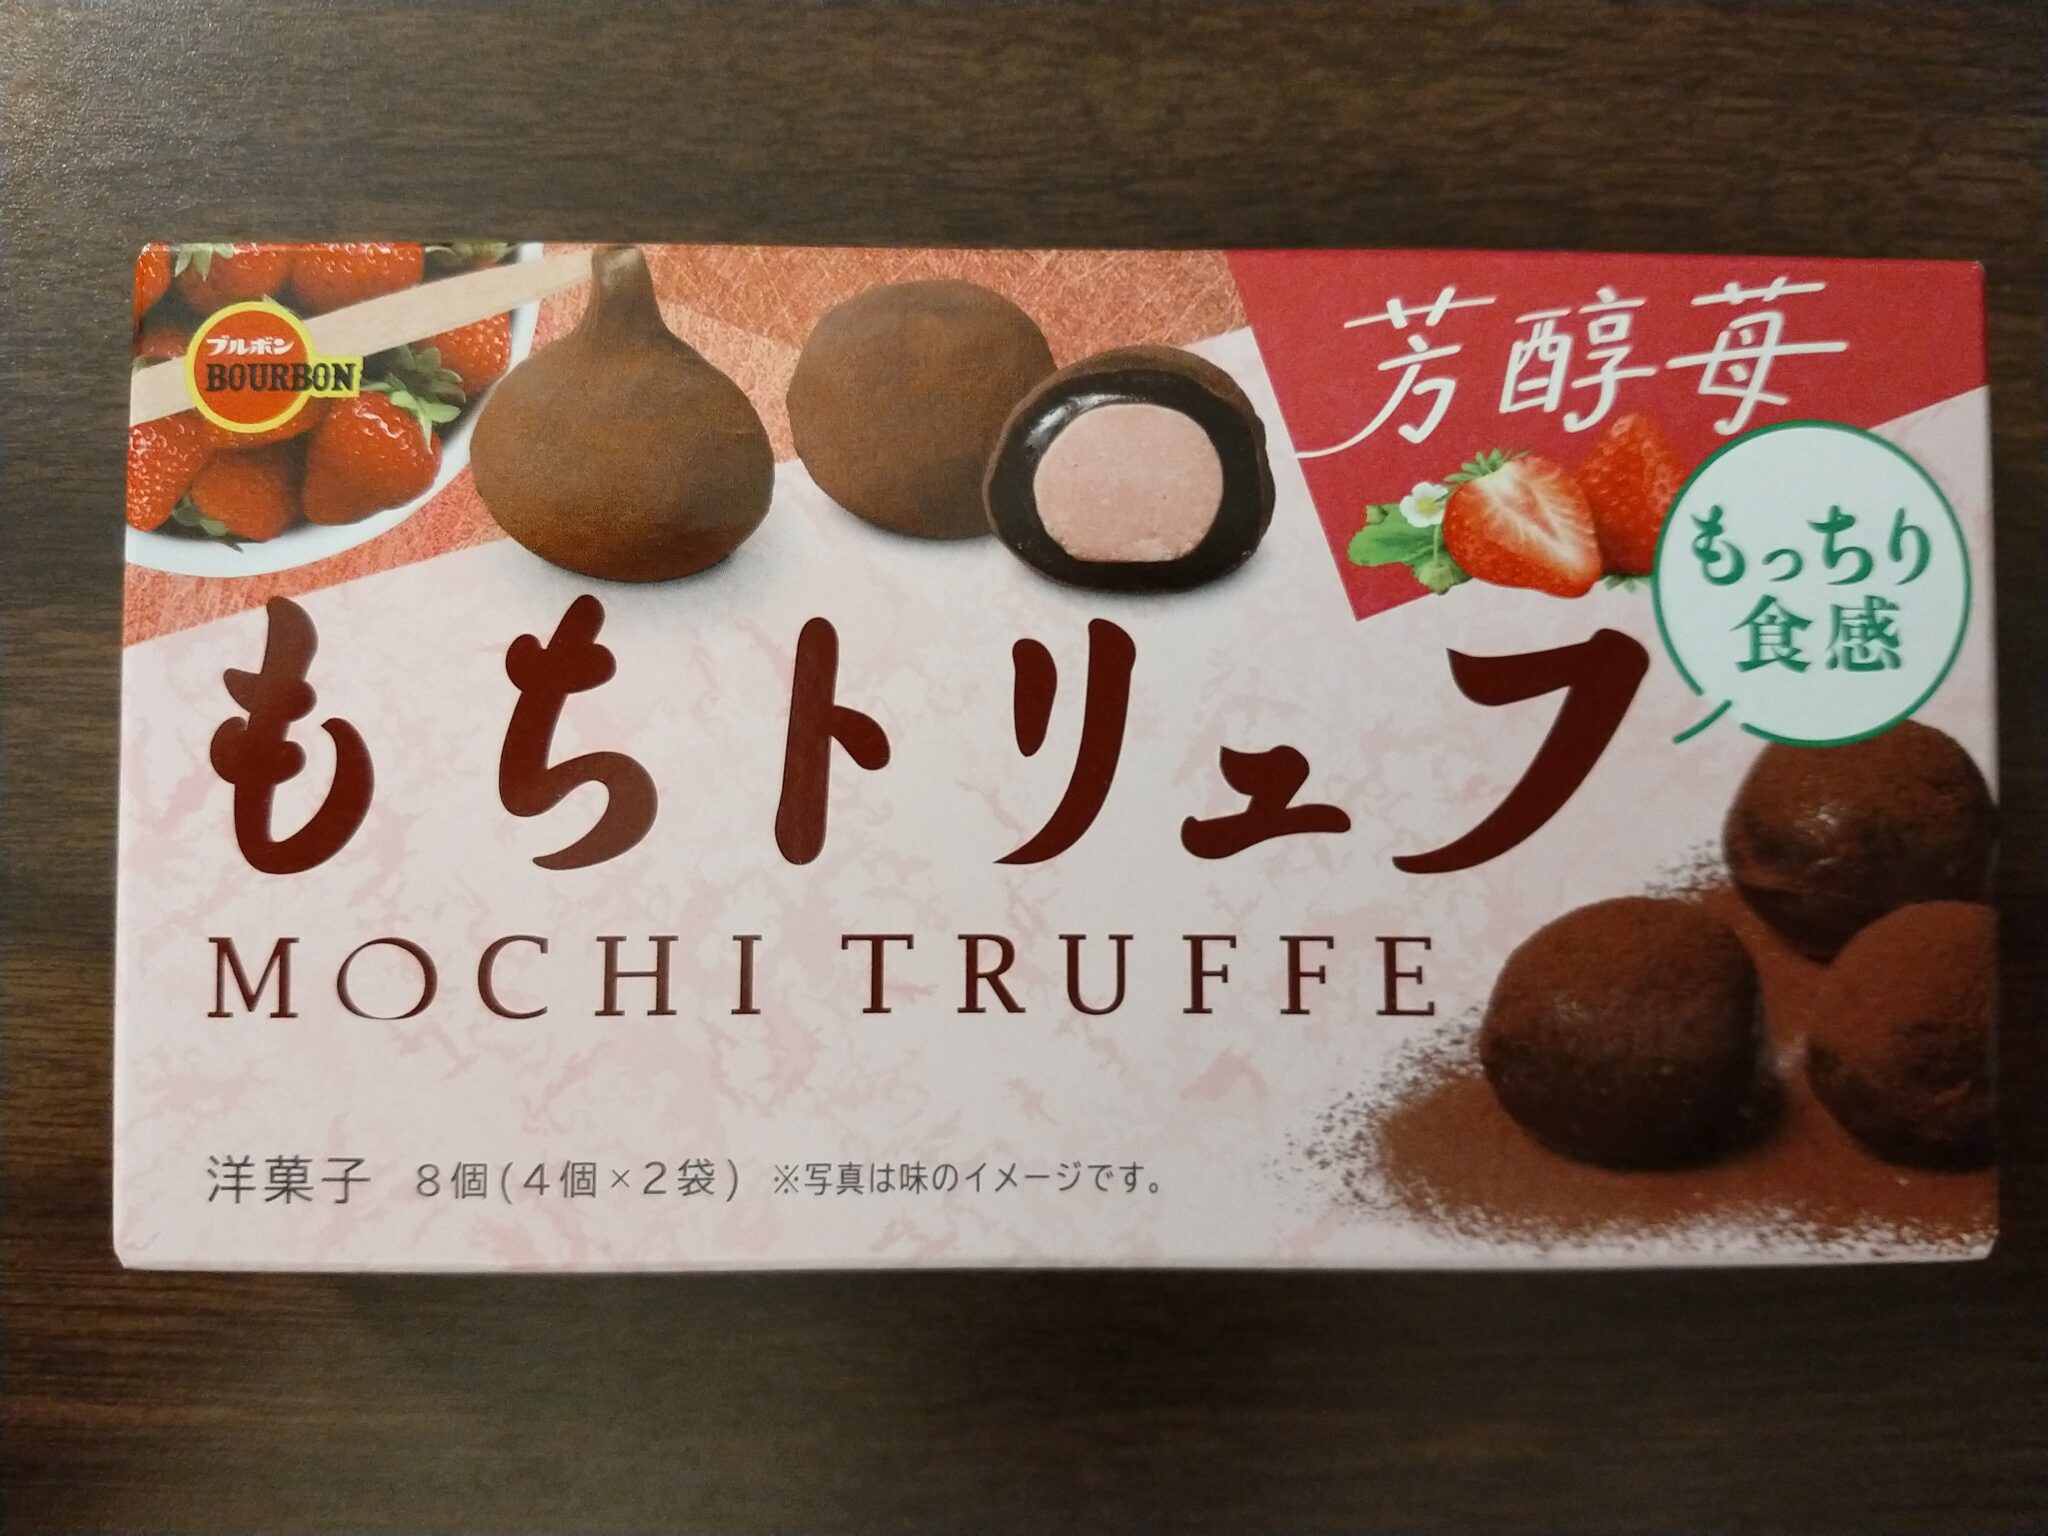 Bourbon – Mochi Truffe Strawberry Cocoa